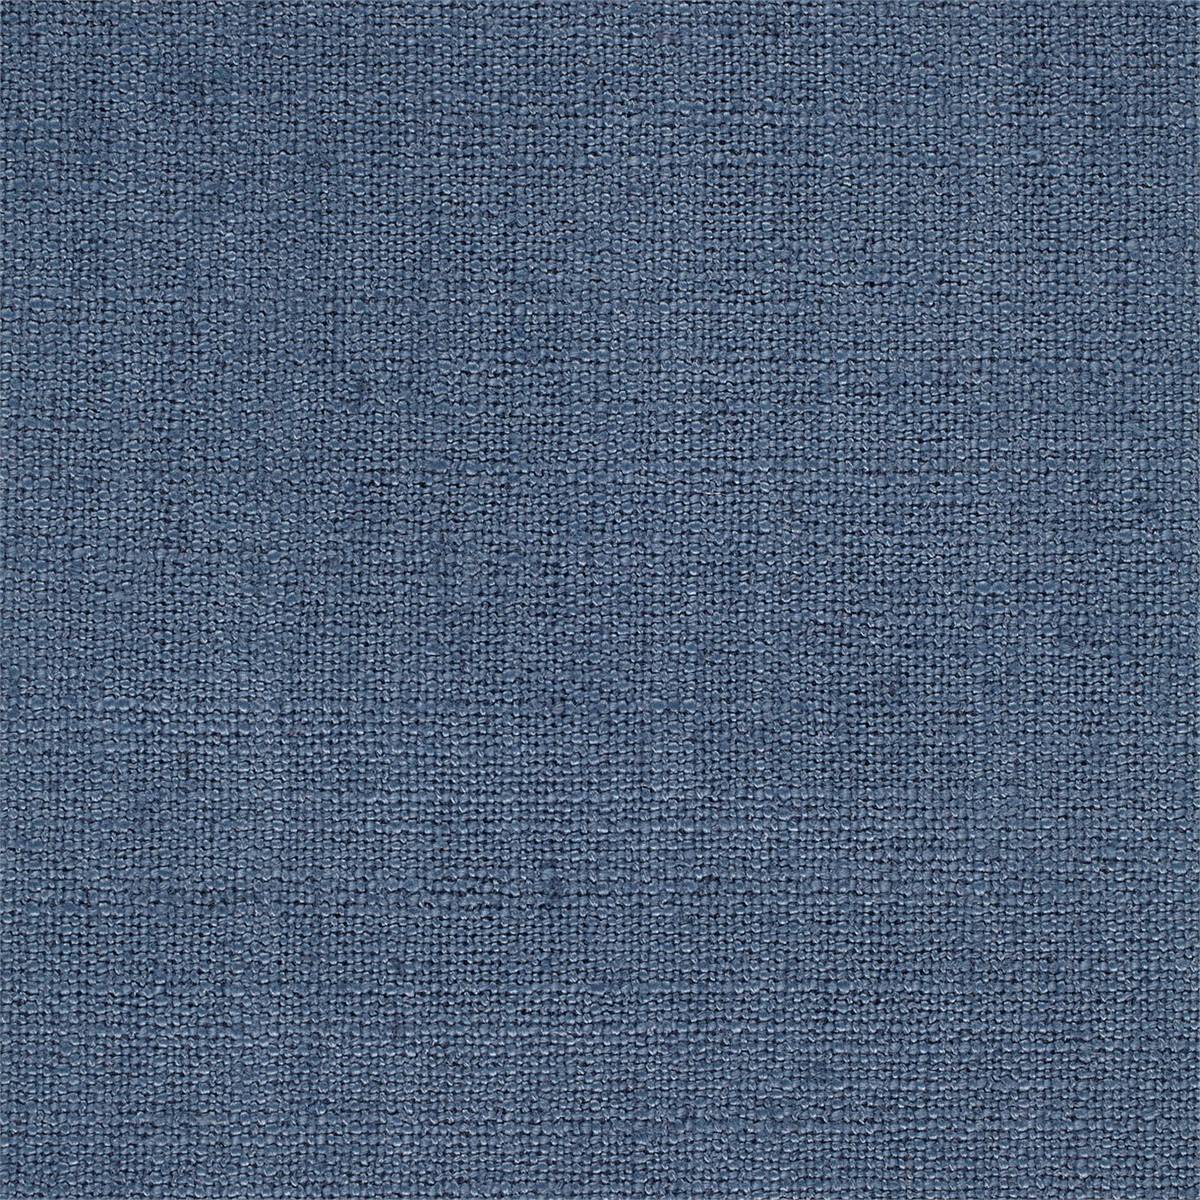 Lagom Denim Fabric by Sanderson